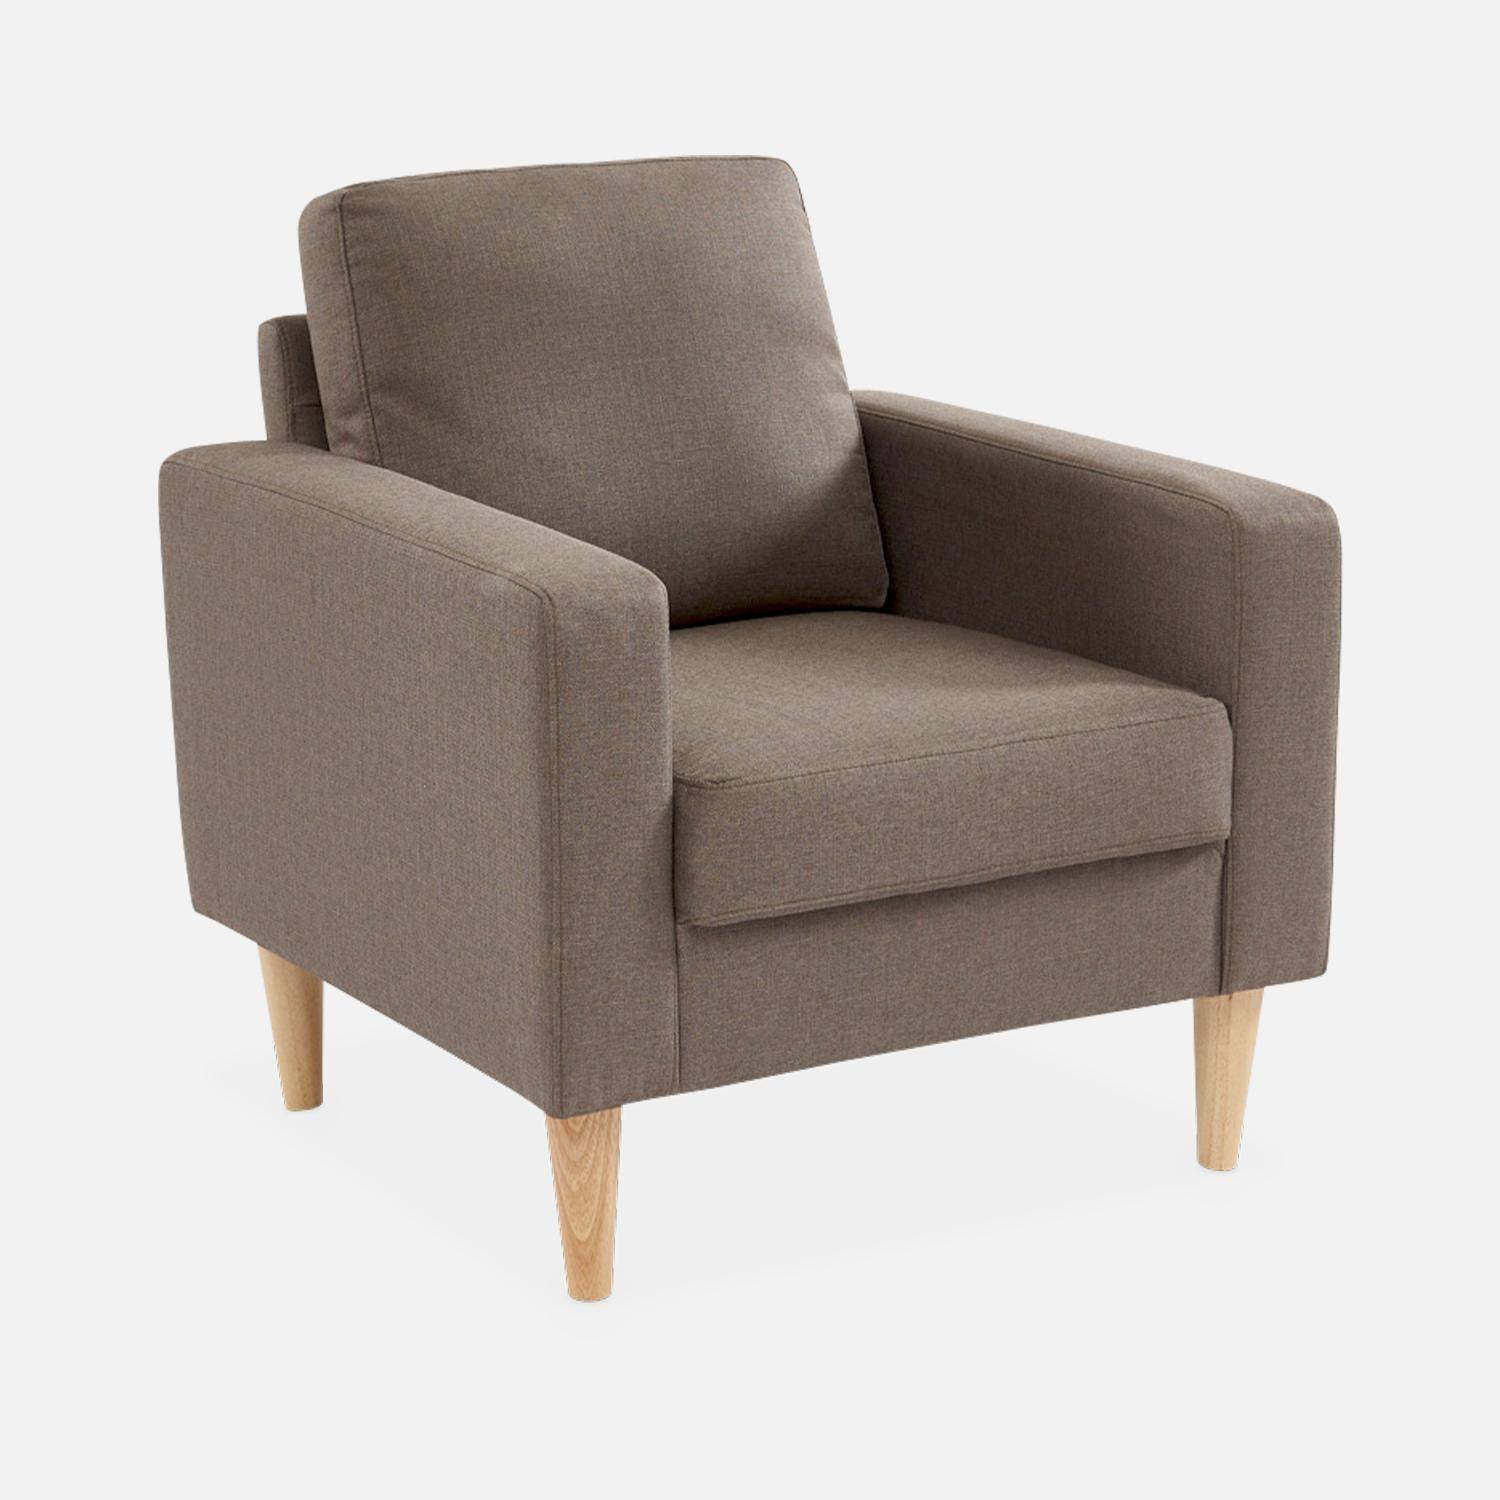 Bruine stoffen armstoel - Bjorn - 1-zits sofa met houten poten, Scandinavische stijl Photo2